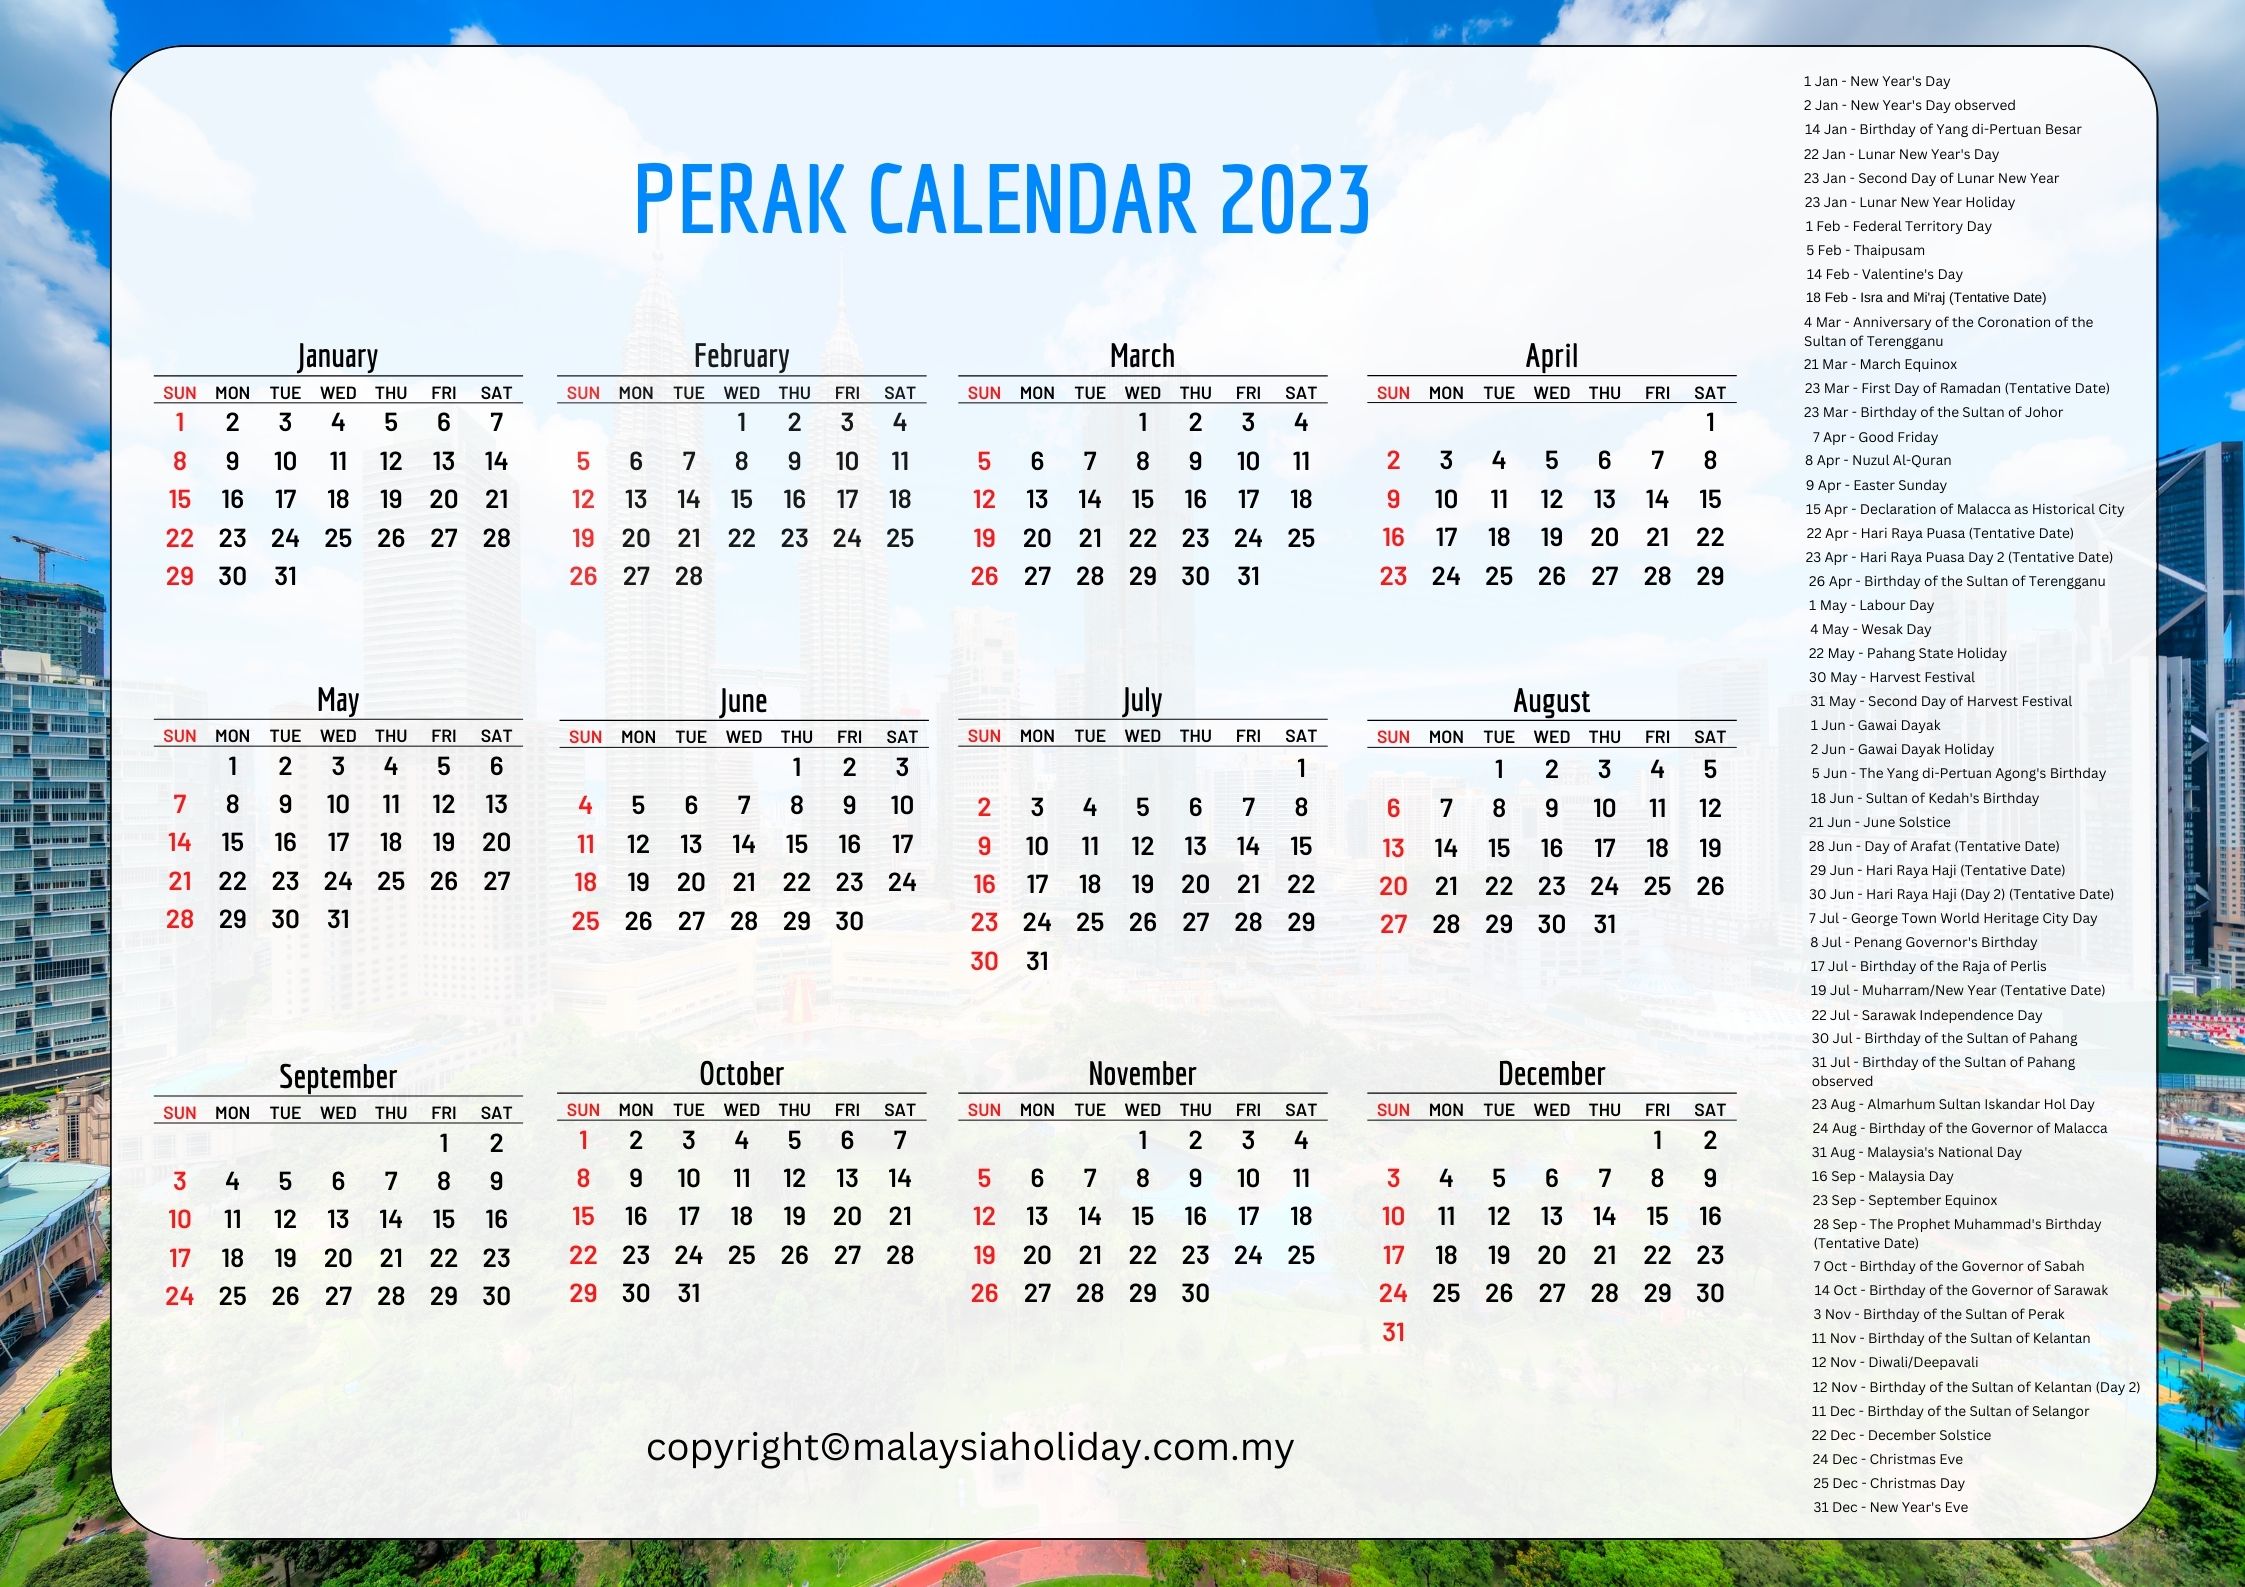 Public Holidays 2023 Perak